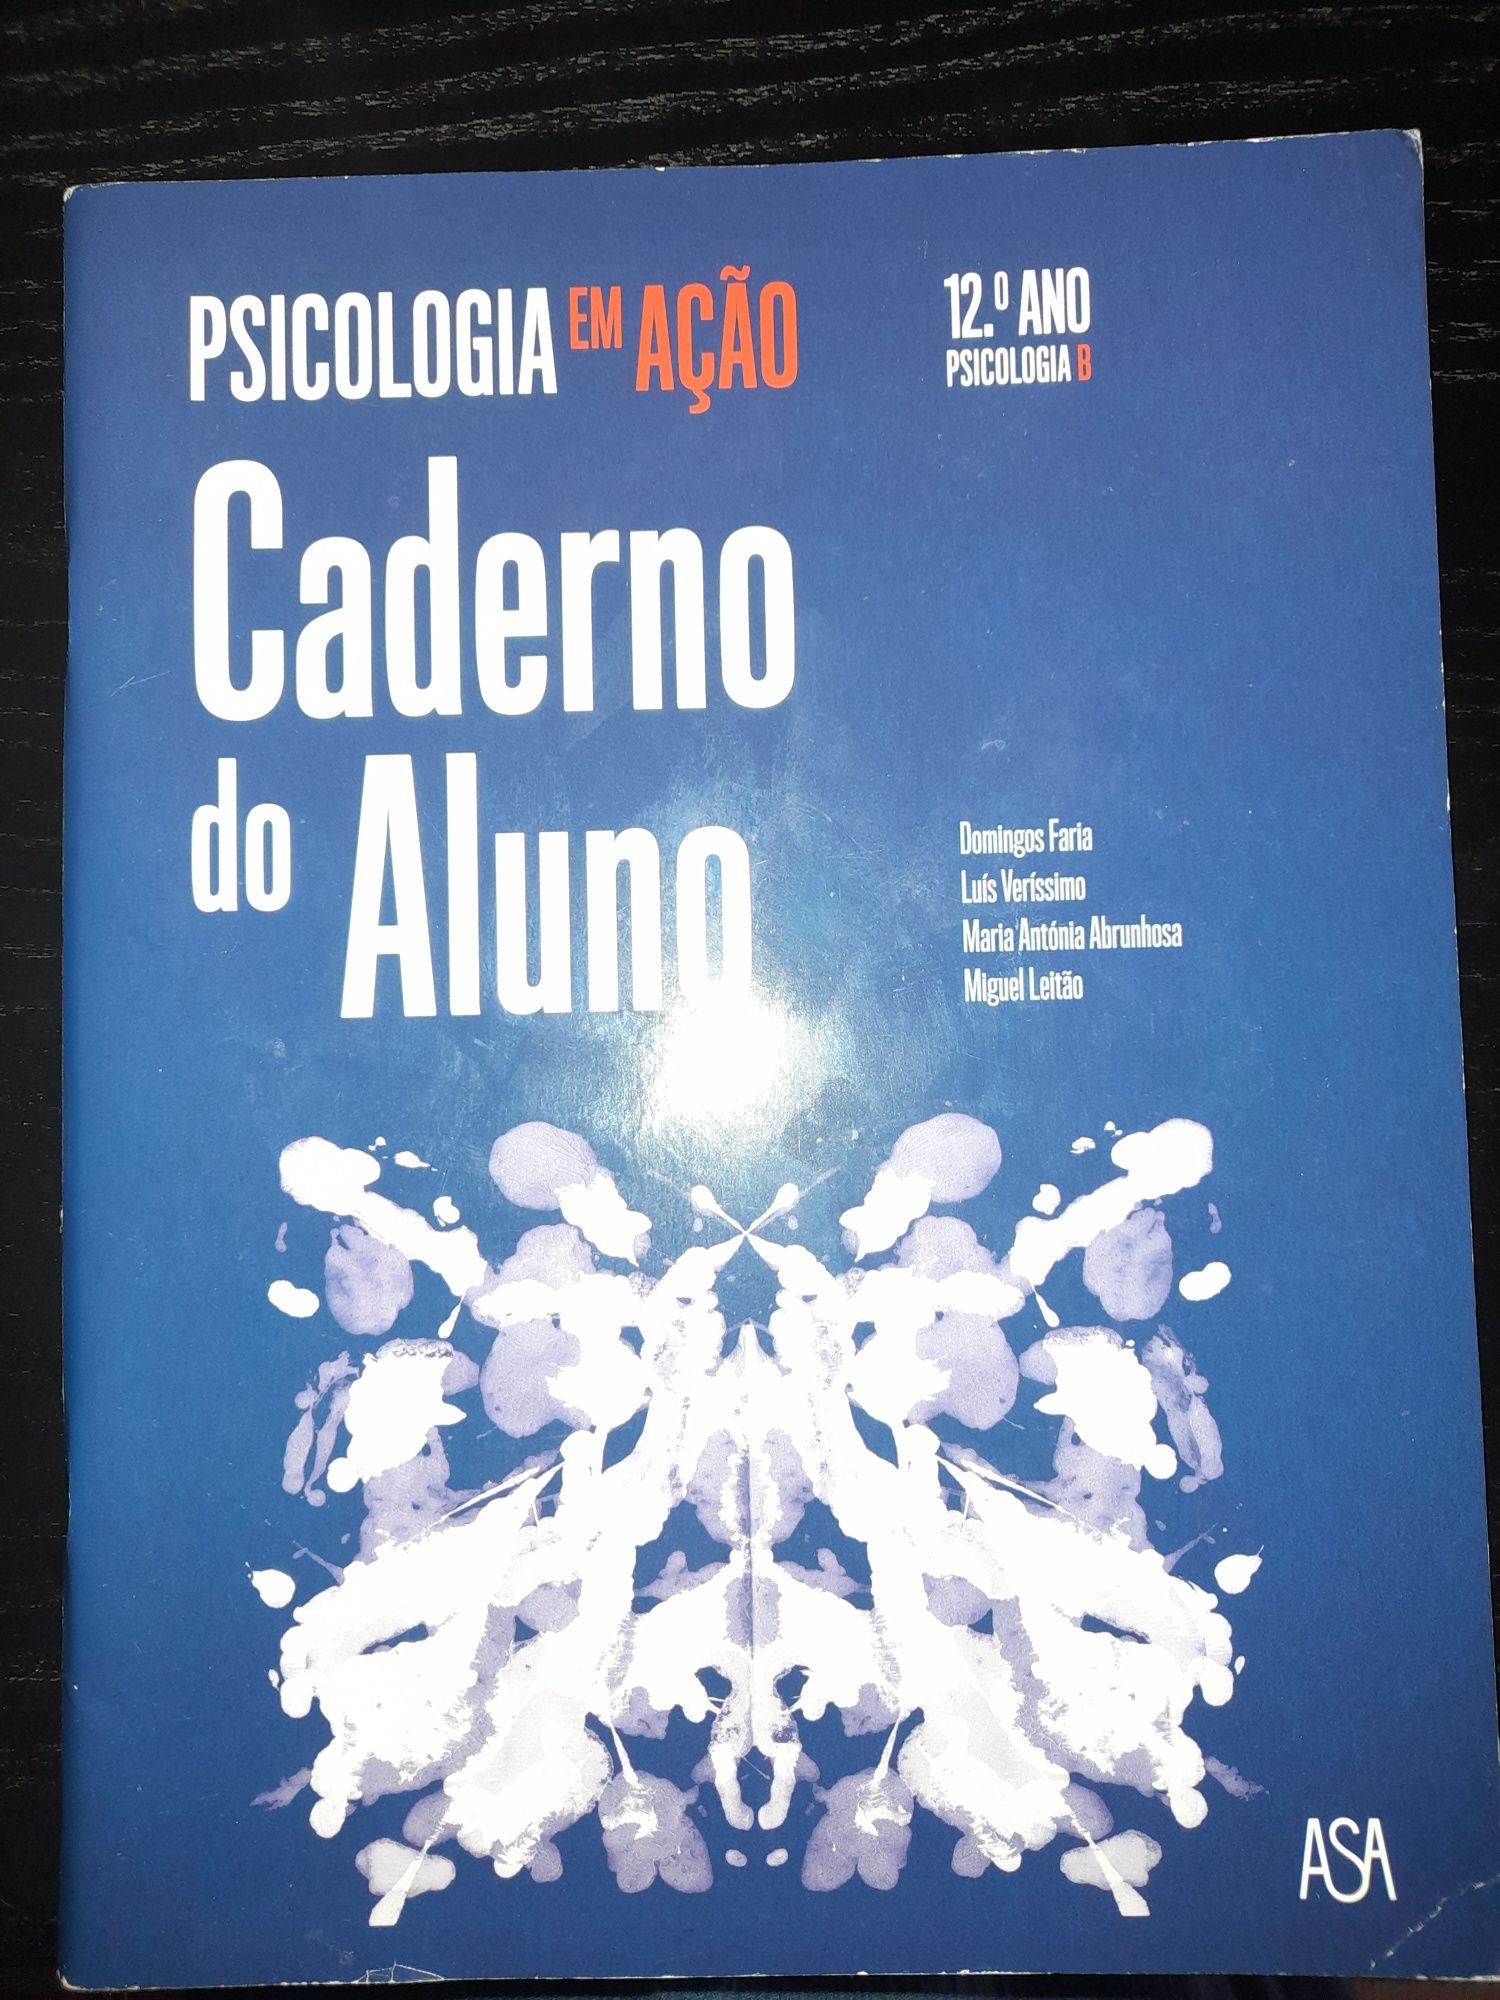 Caderno atividade 12°Ano psicologia e sociologia